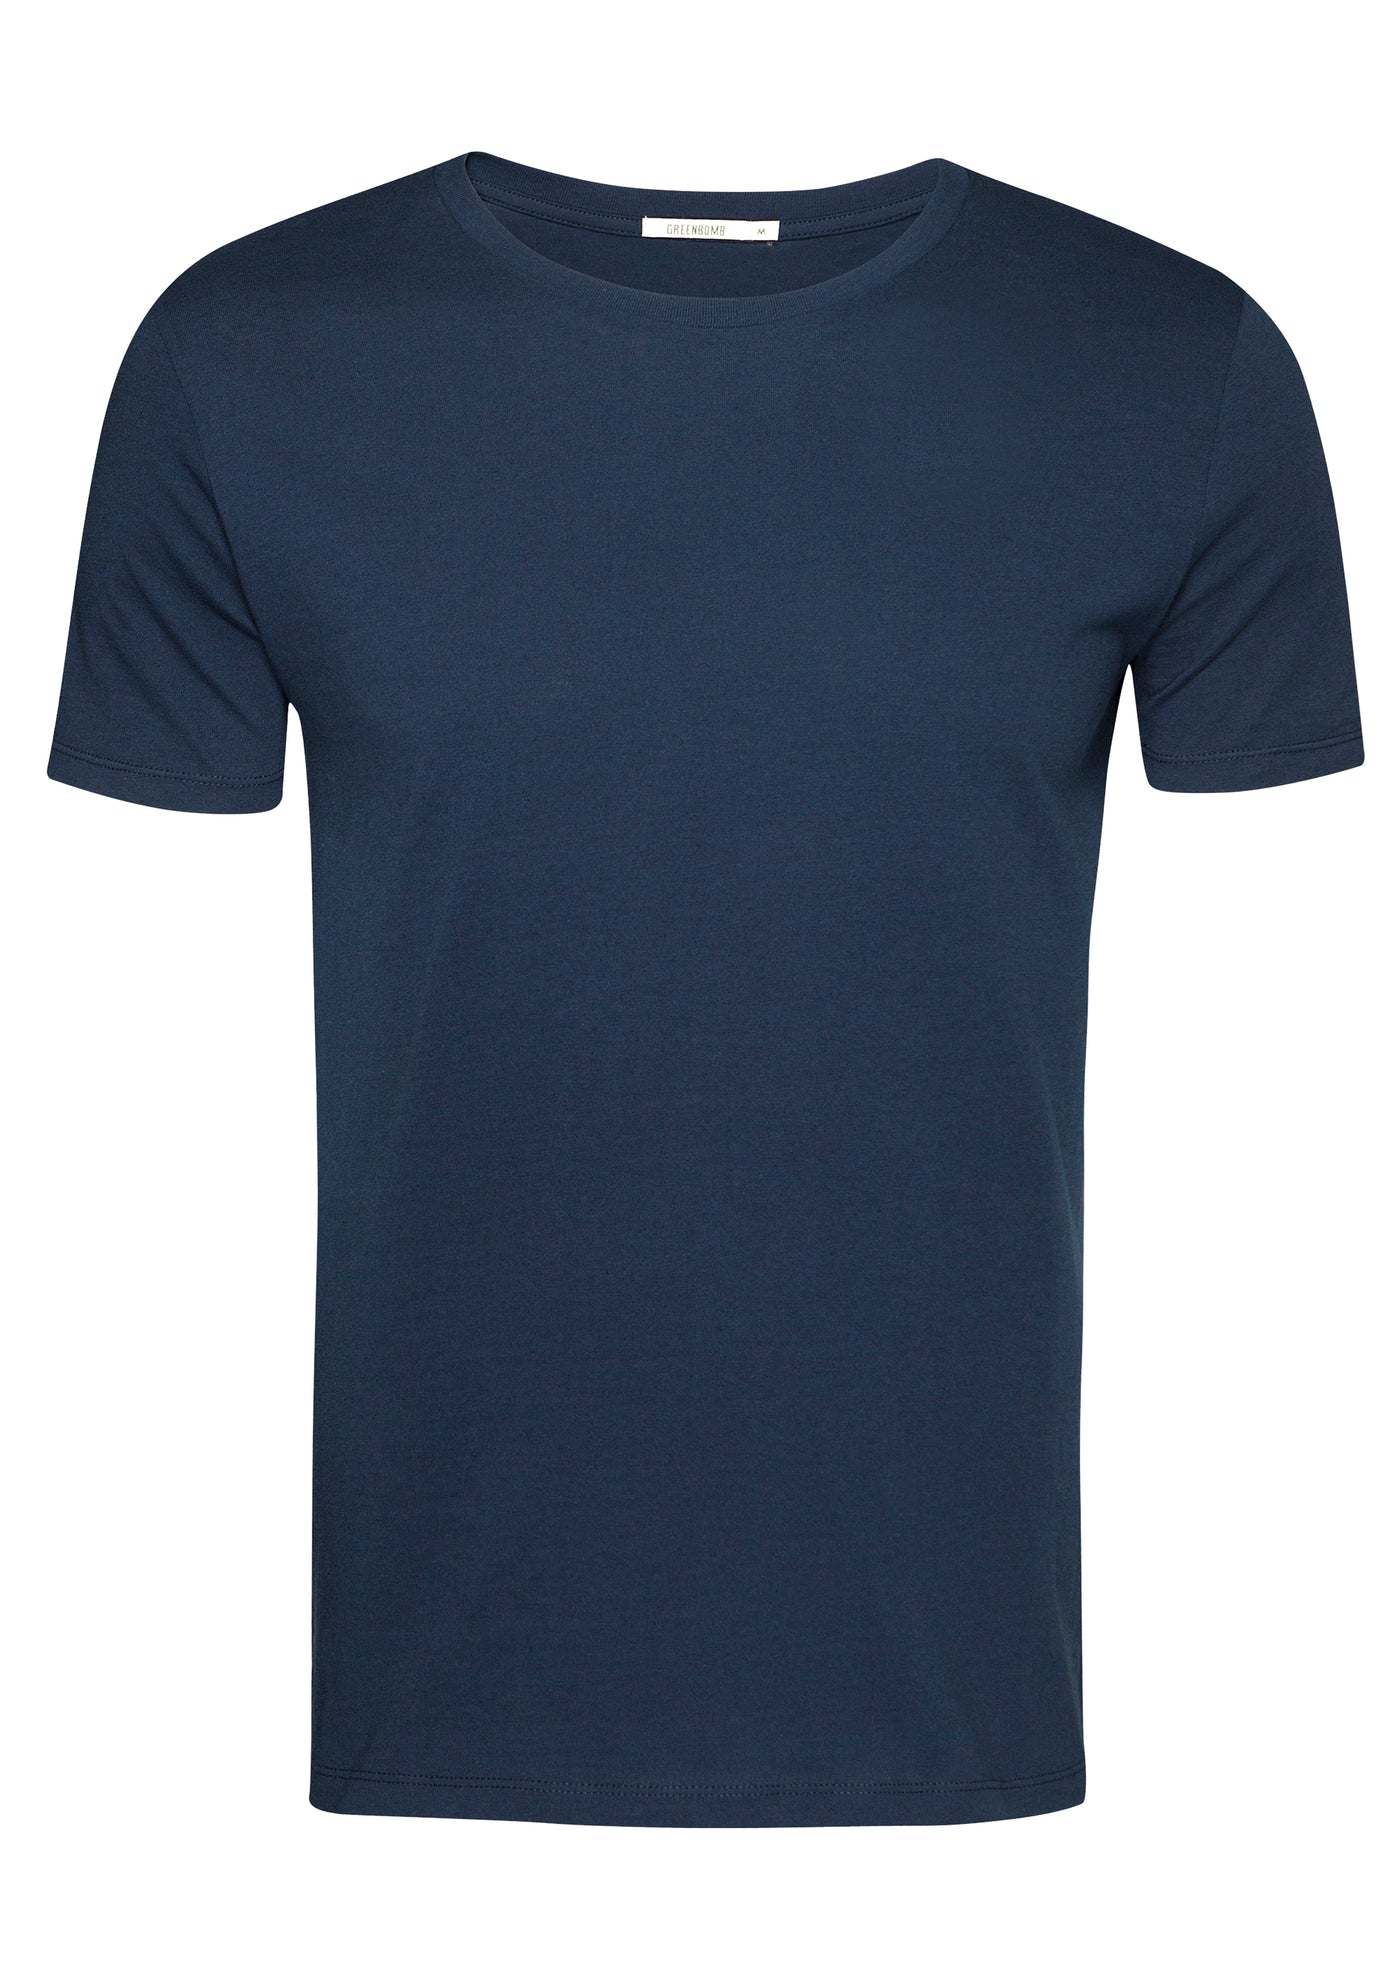 T-Shirt Basic Guide Navy Blau